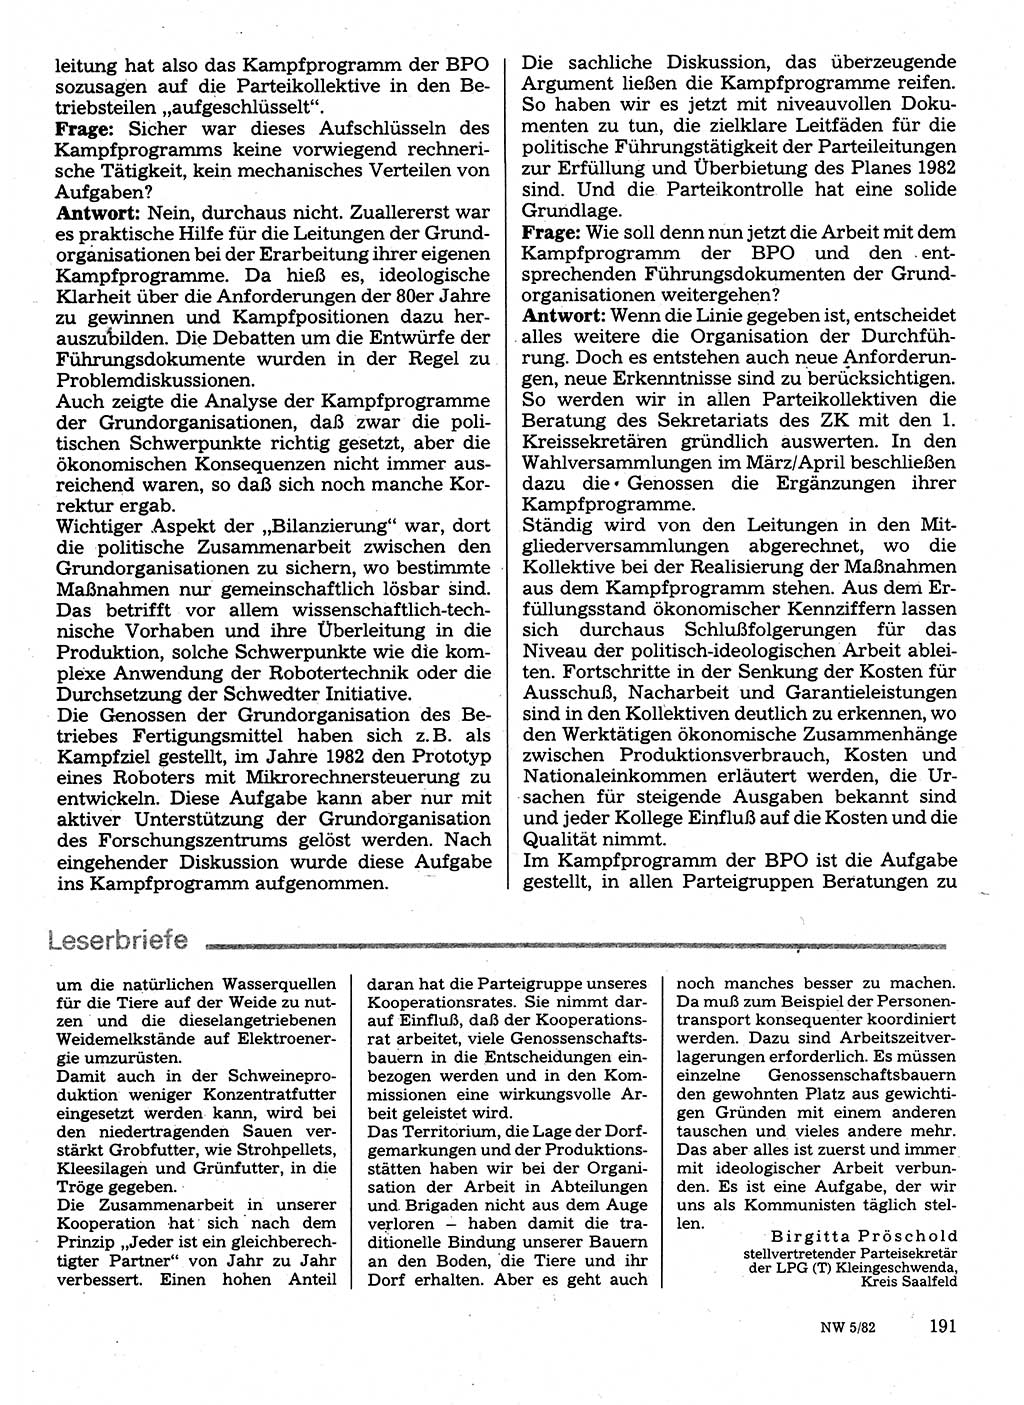 Neuer Weg (NW), Organ des Zentralkomitees (ZK) der SED (Sozialistische Einheitspartei Deutschlands) für Fragen des Parteilebens, 37. Jahrgang [Deutsche Demokratische Republik (DDR)] 1982, Seite 191 (NW ZK SED DDR 1982, S. 191)